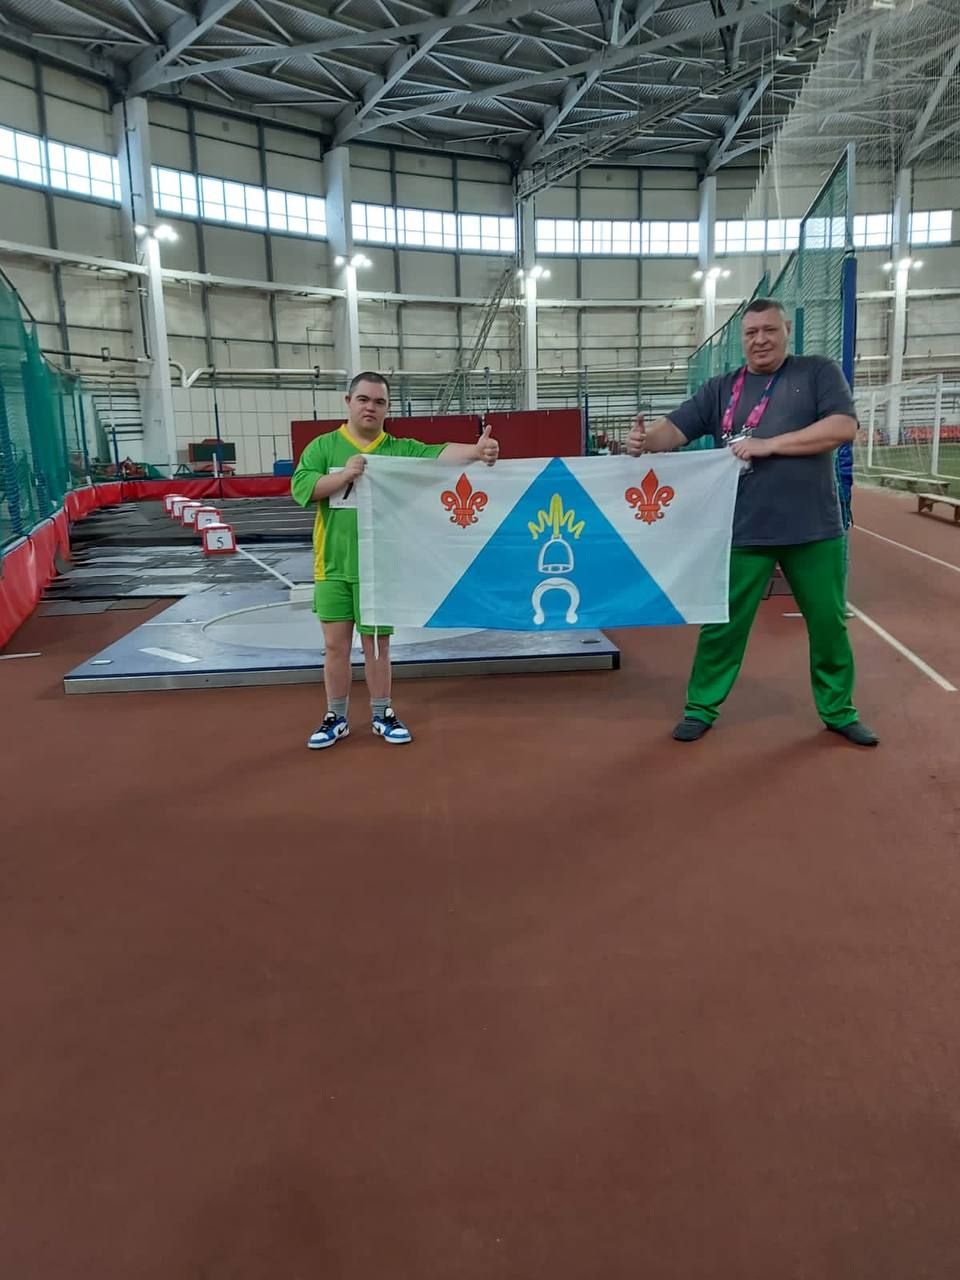 Менделеевцы приняли участие в Единых играх Специальной Олимпиады в Казани